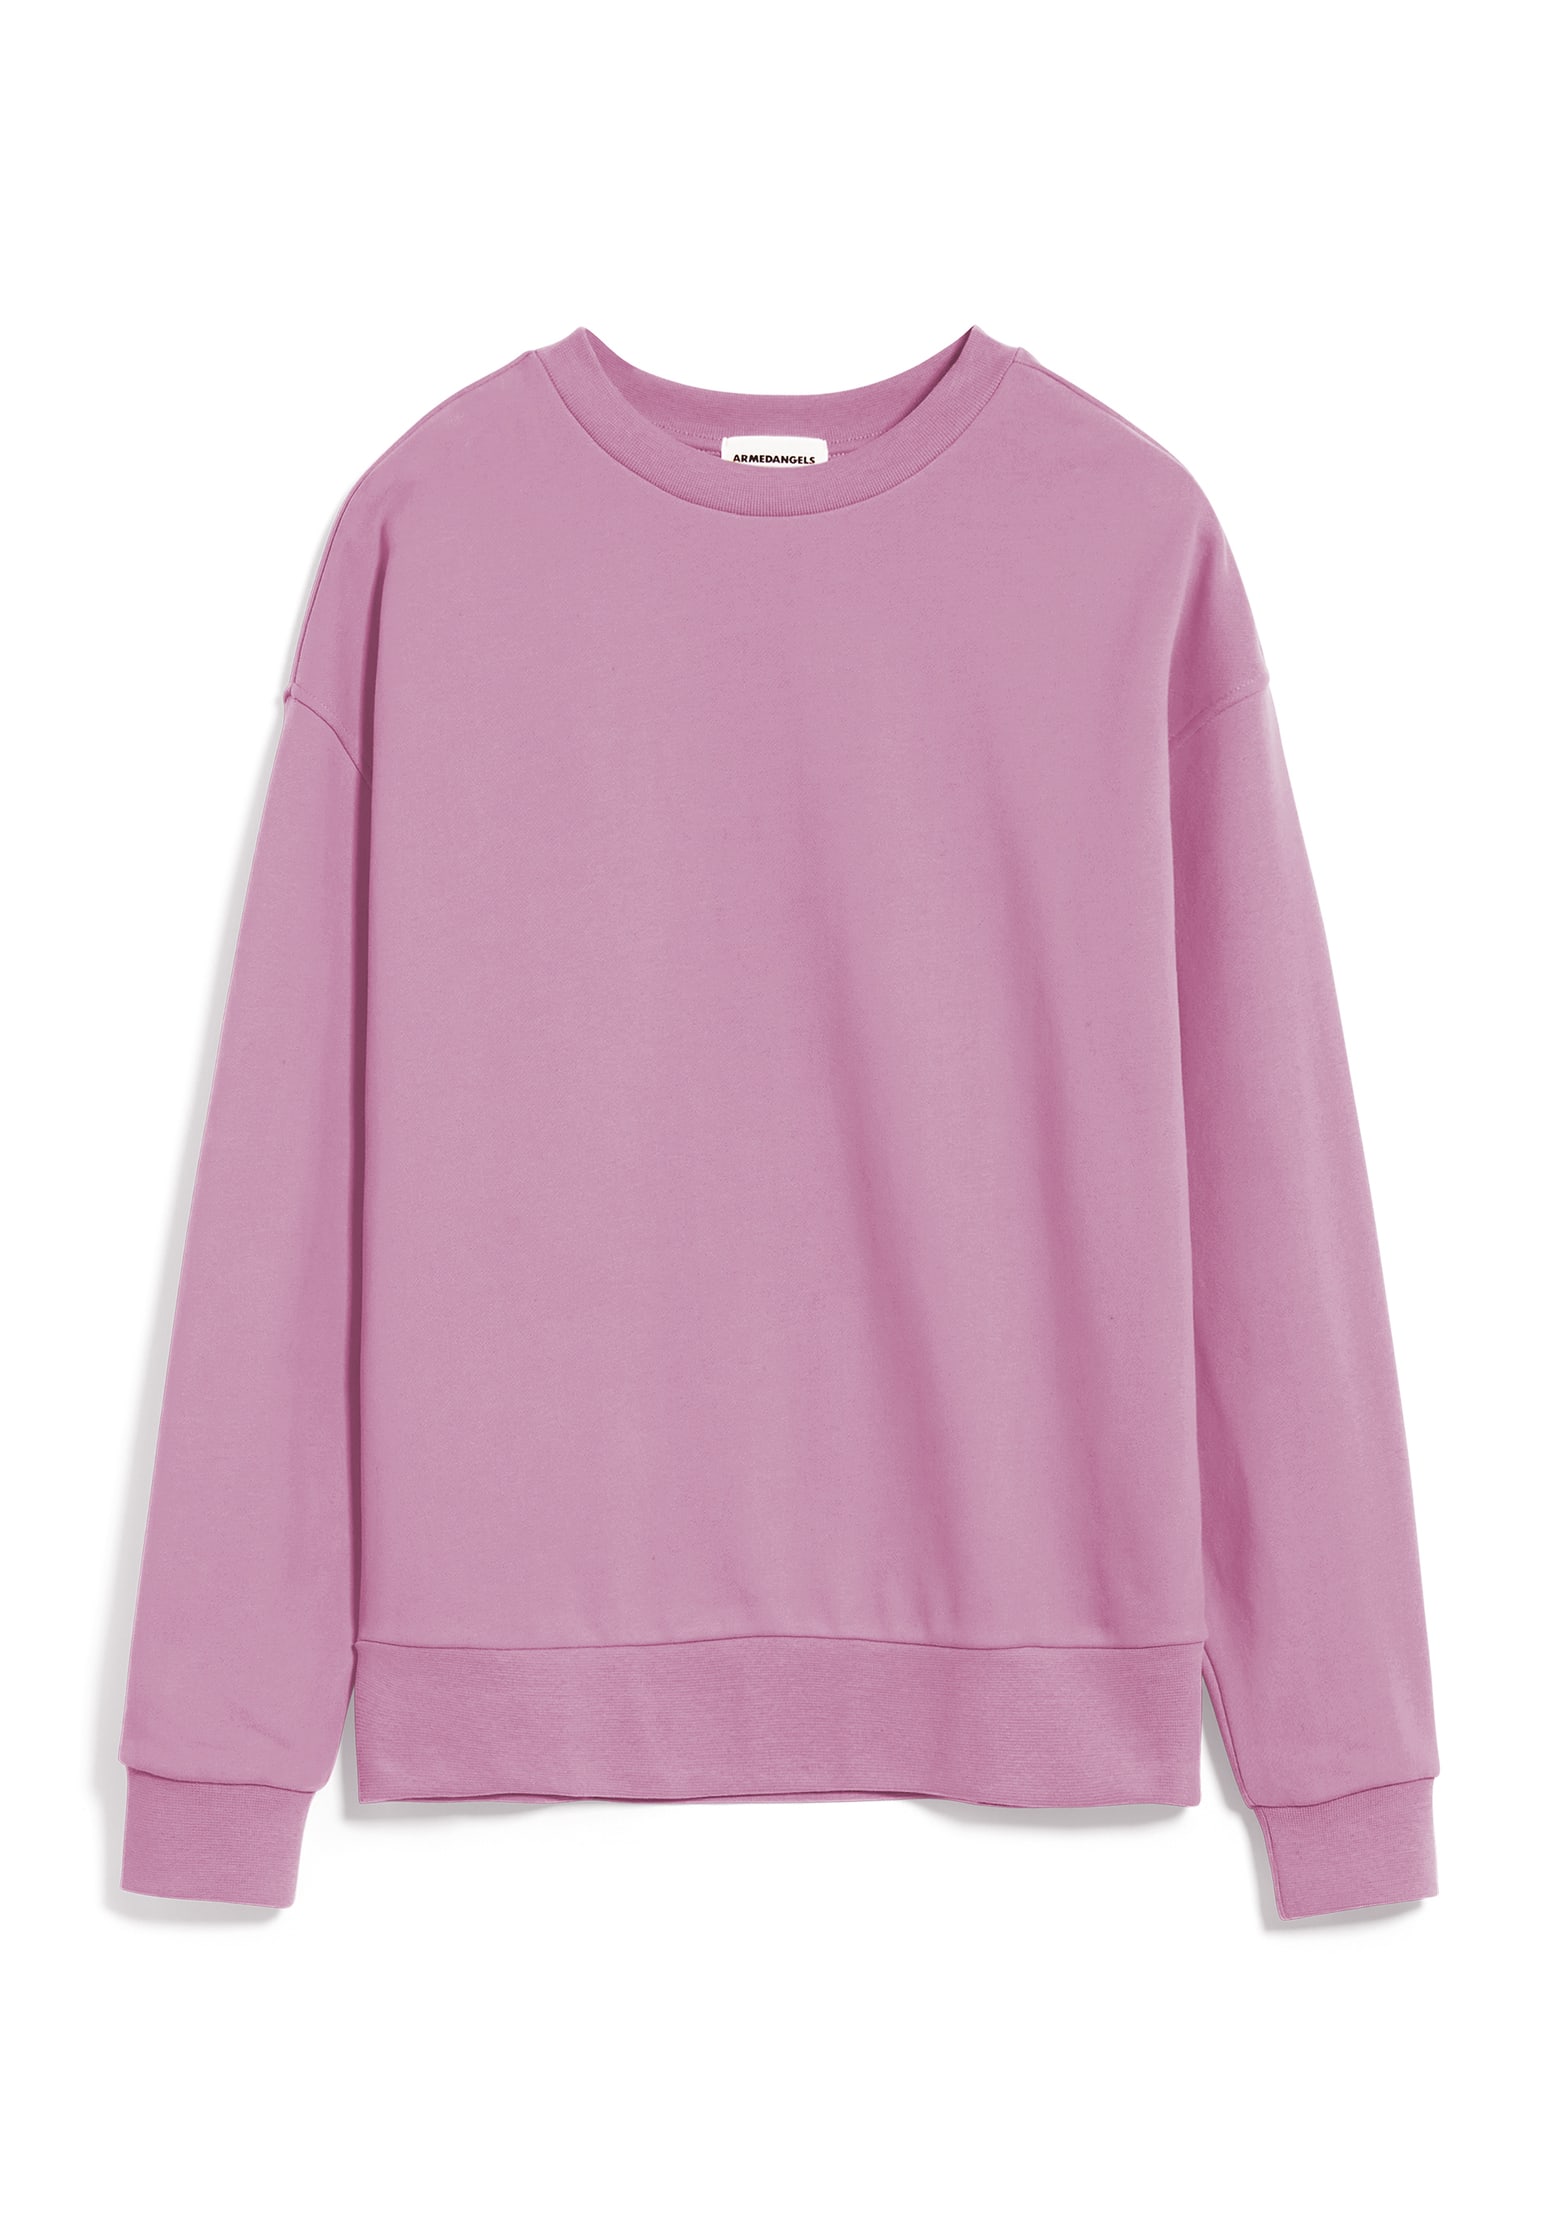 ARMEDANGELS Sweatshirt Aarin raspberry pink XL